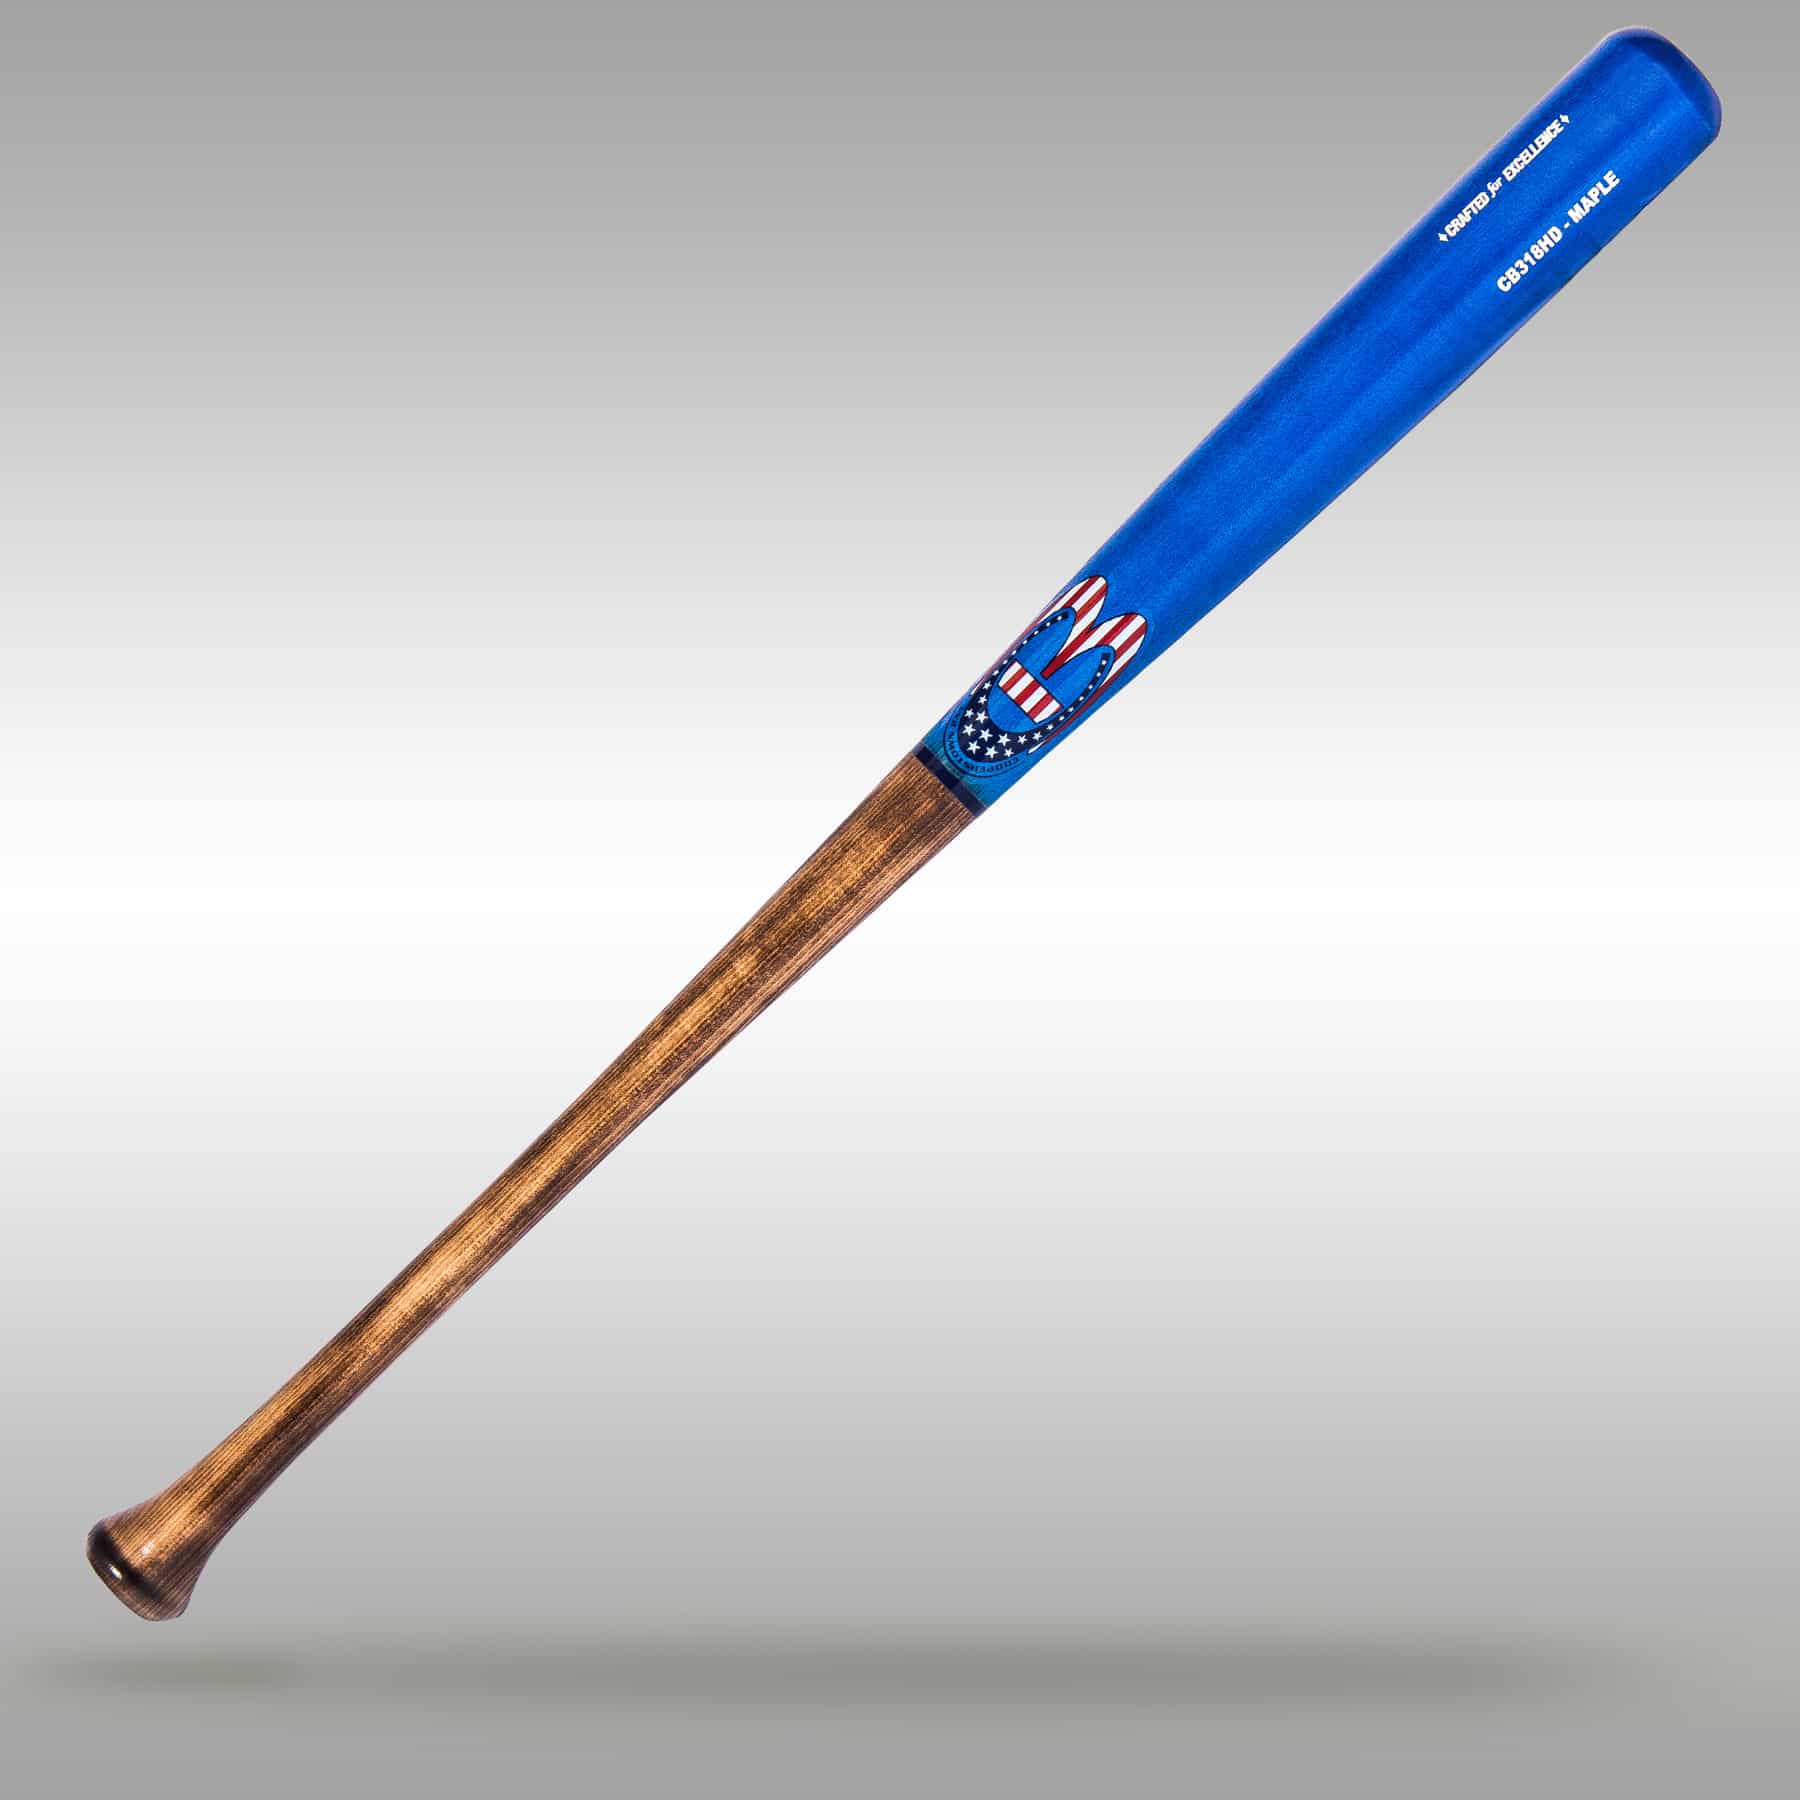 CB318HD Maple Junior Pro Wood Big Barrel Bat